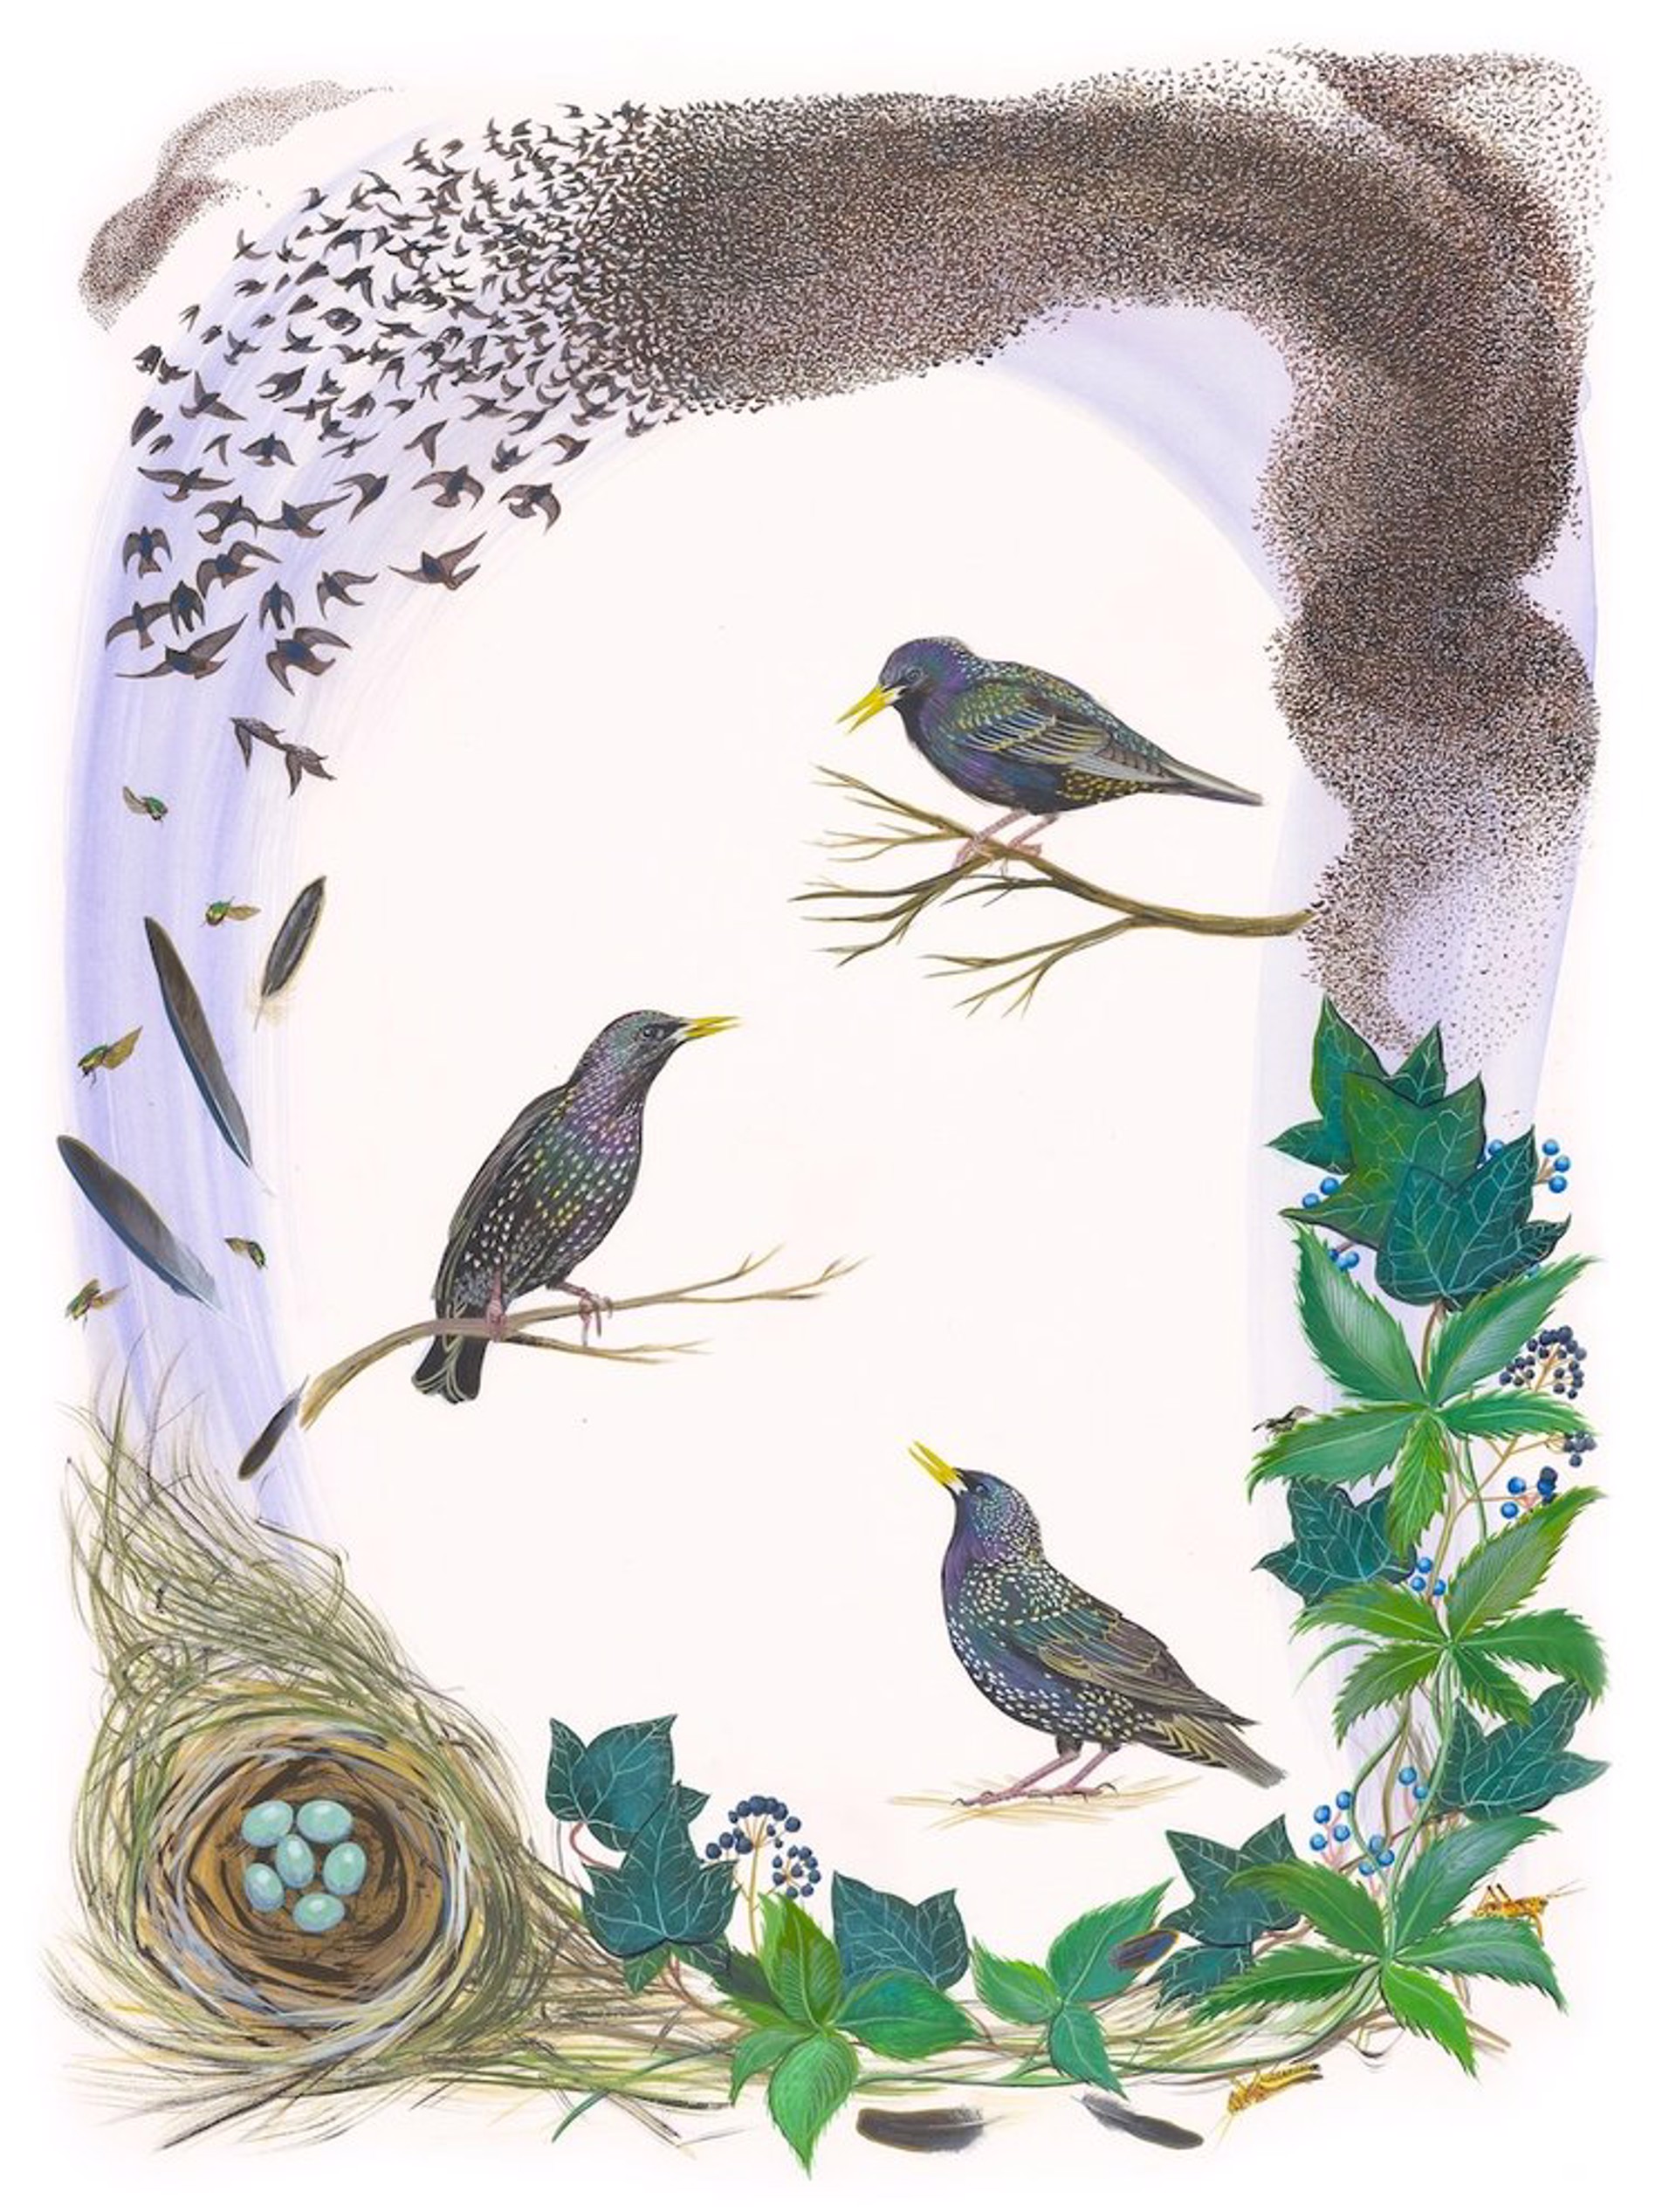 Birds of Shakespeare: European Starling (Sturnus vulgaris) by Missy Dunaway